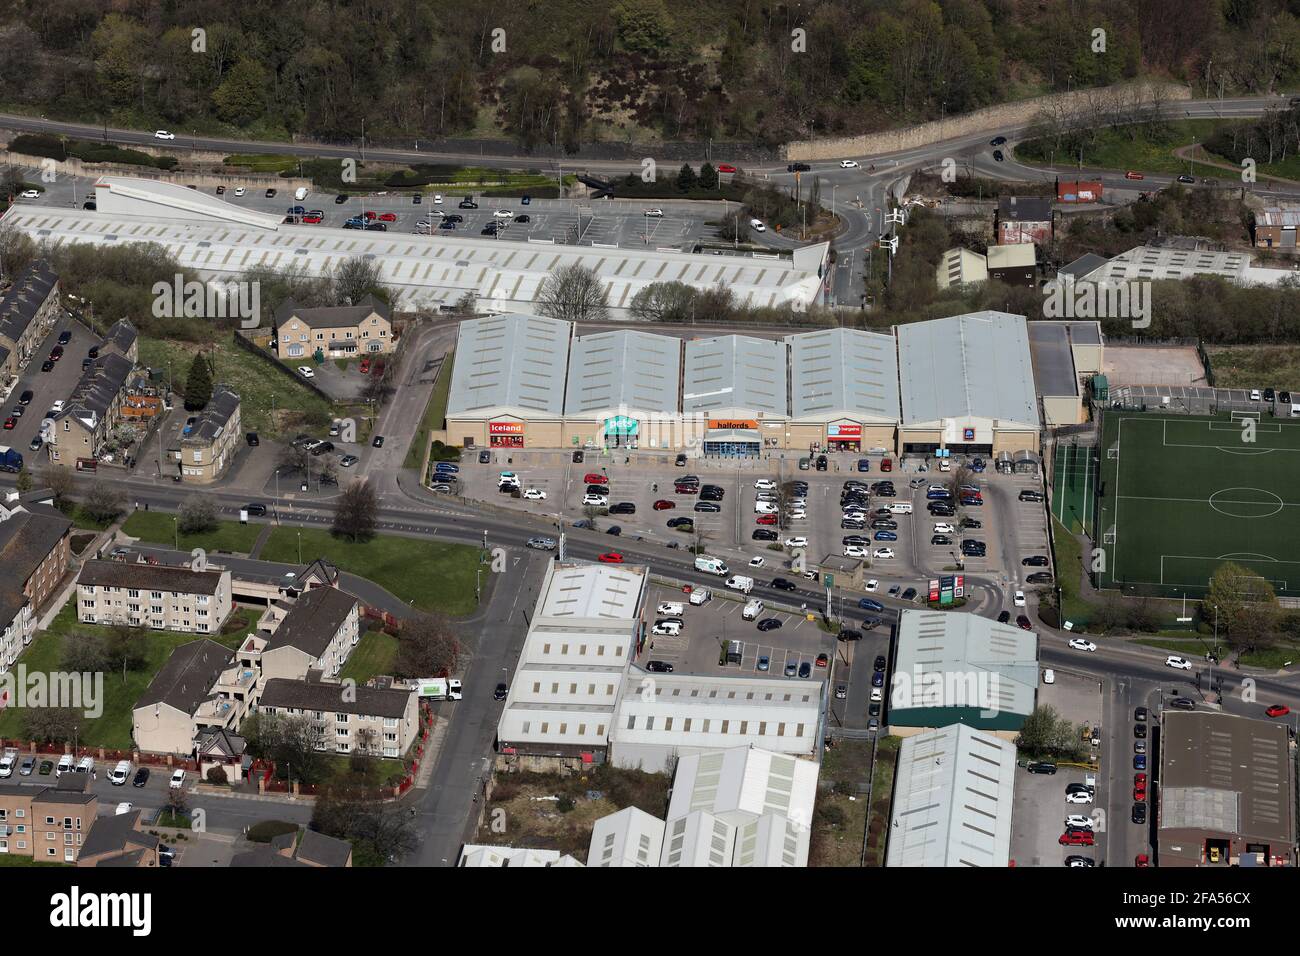 Vue aérienne des parcs de vente au détail de Crossley et du parc de vente au détail de Pellon Lane (et d'autres domaines commerciaux) dans la région de Pellon Lane de la ville de Halifax, dans le West Yorkshire Banque D'Images